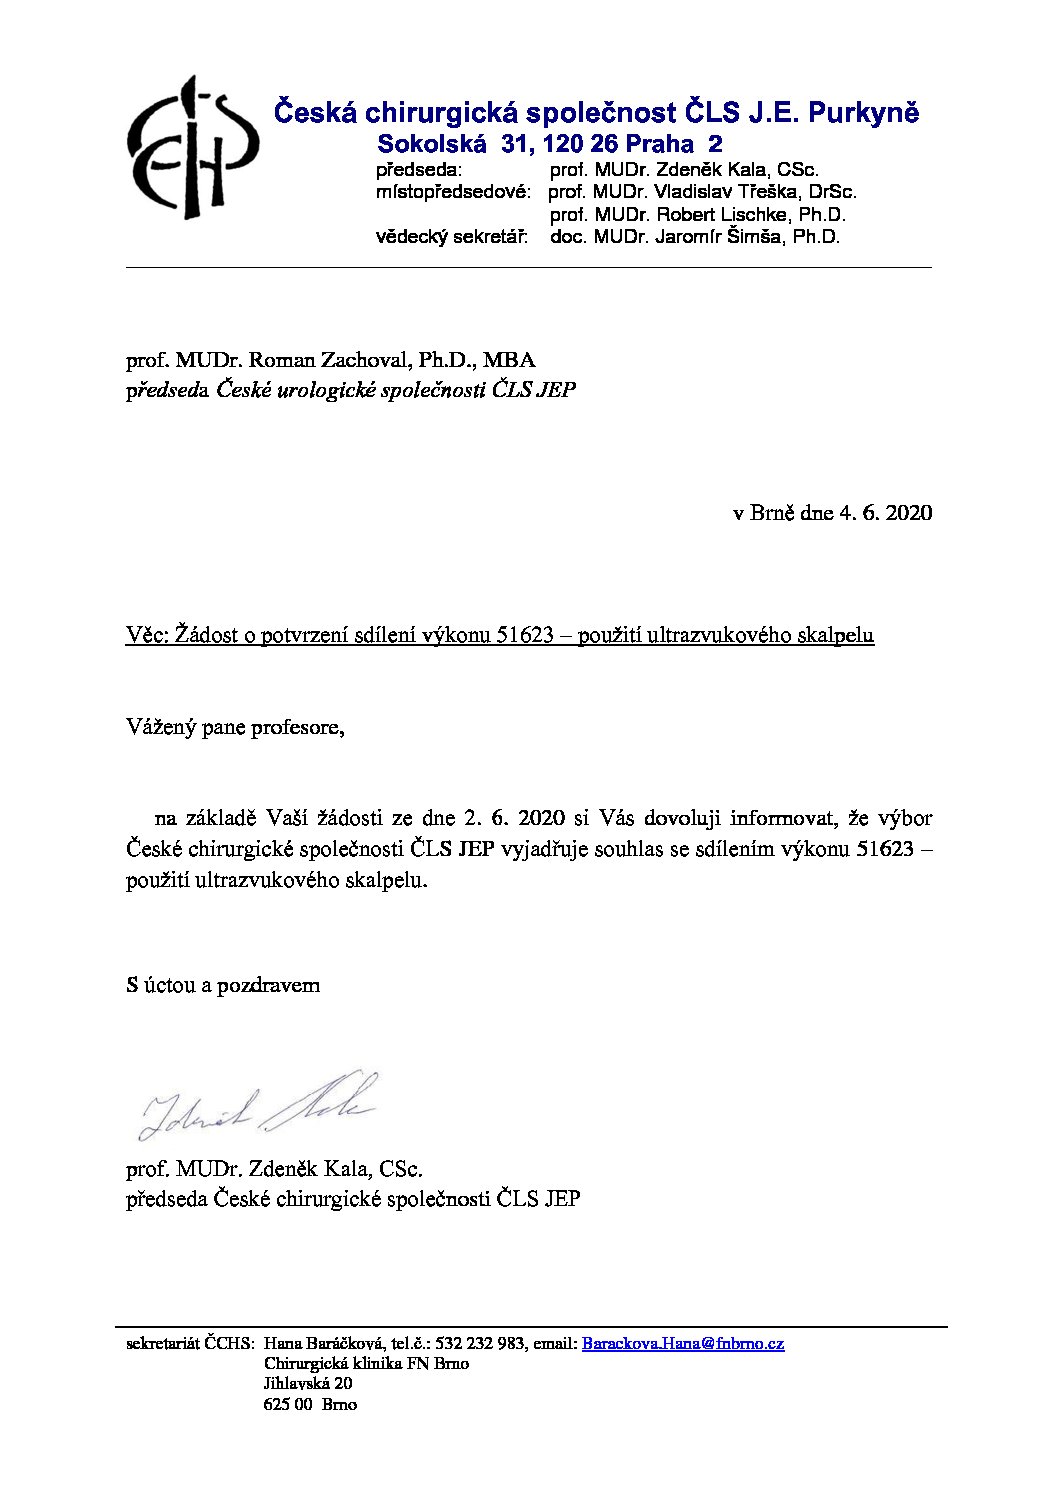 Stanovisko výboru ČCHS ČLS JEP – Sdílení výkonu 51623: použití ultrazvukového skalpelu (4. 6. 2020)